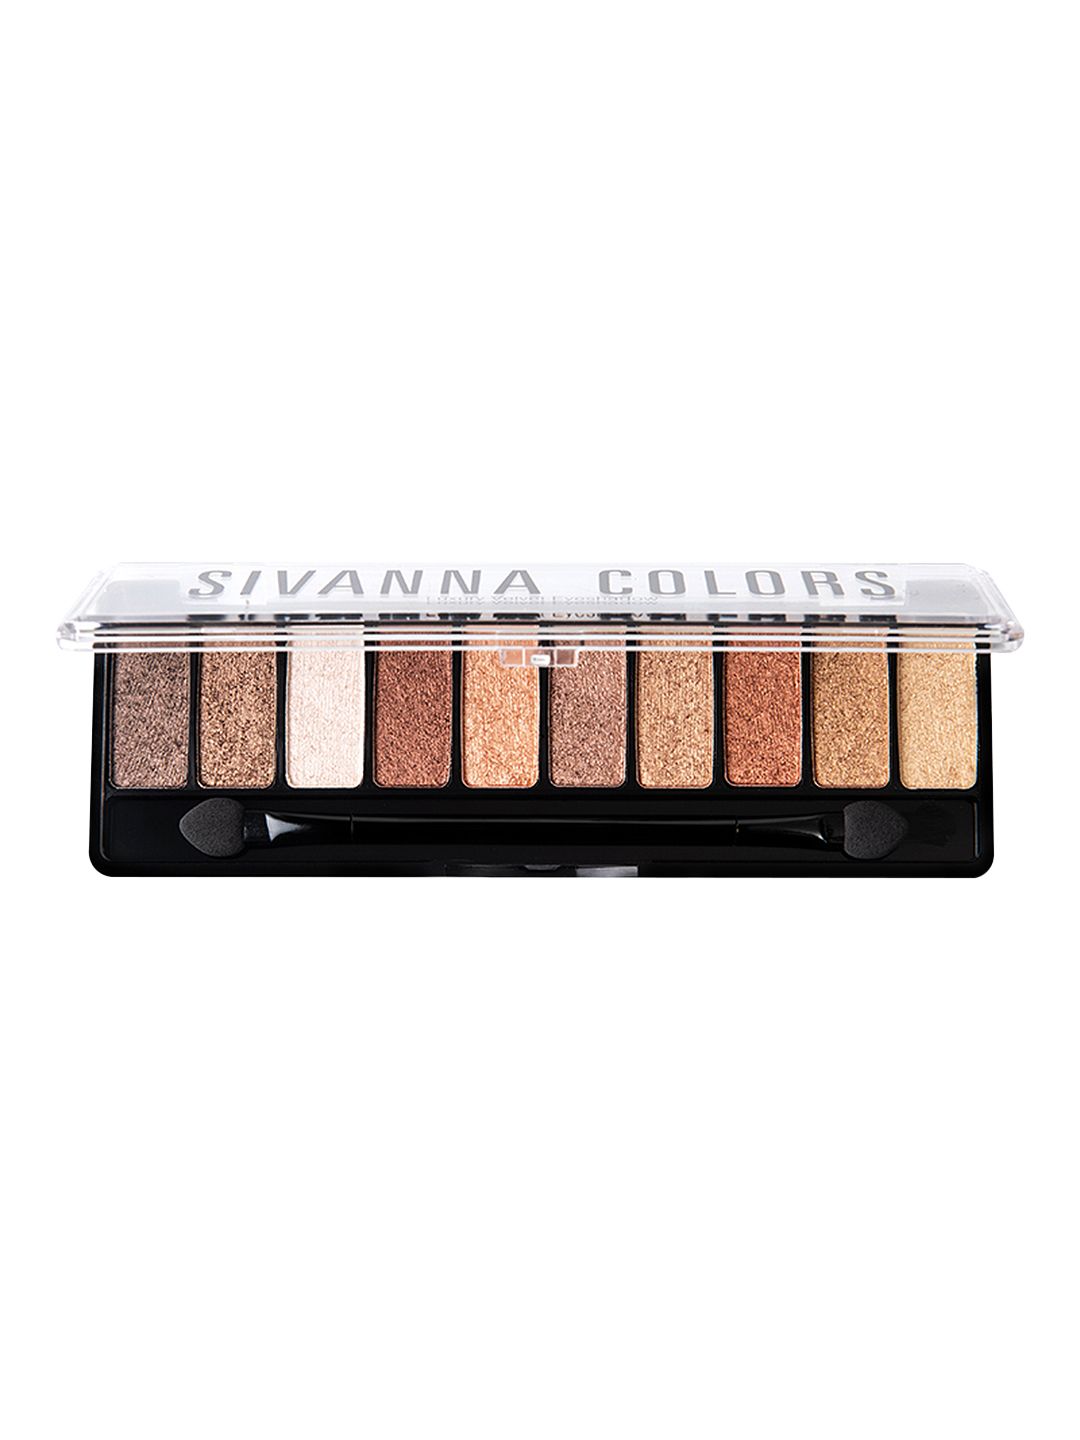 Sivanna Colors Luxury Velvet Eyeshadow - HF697 03 Price in India